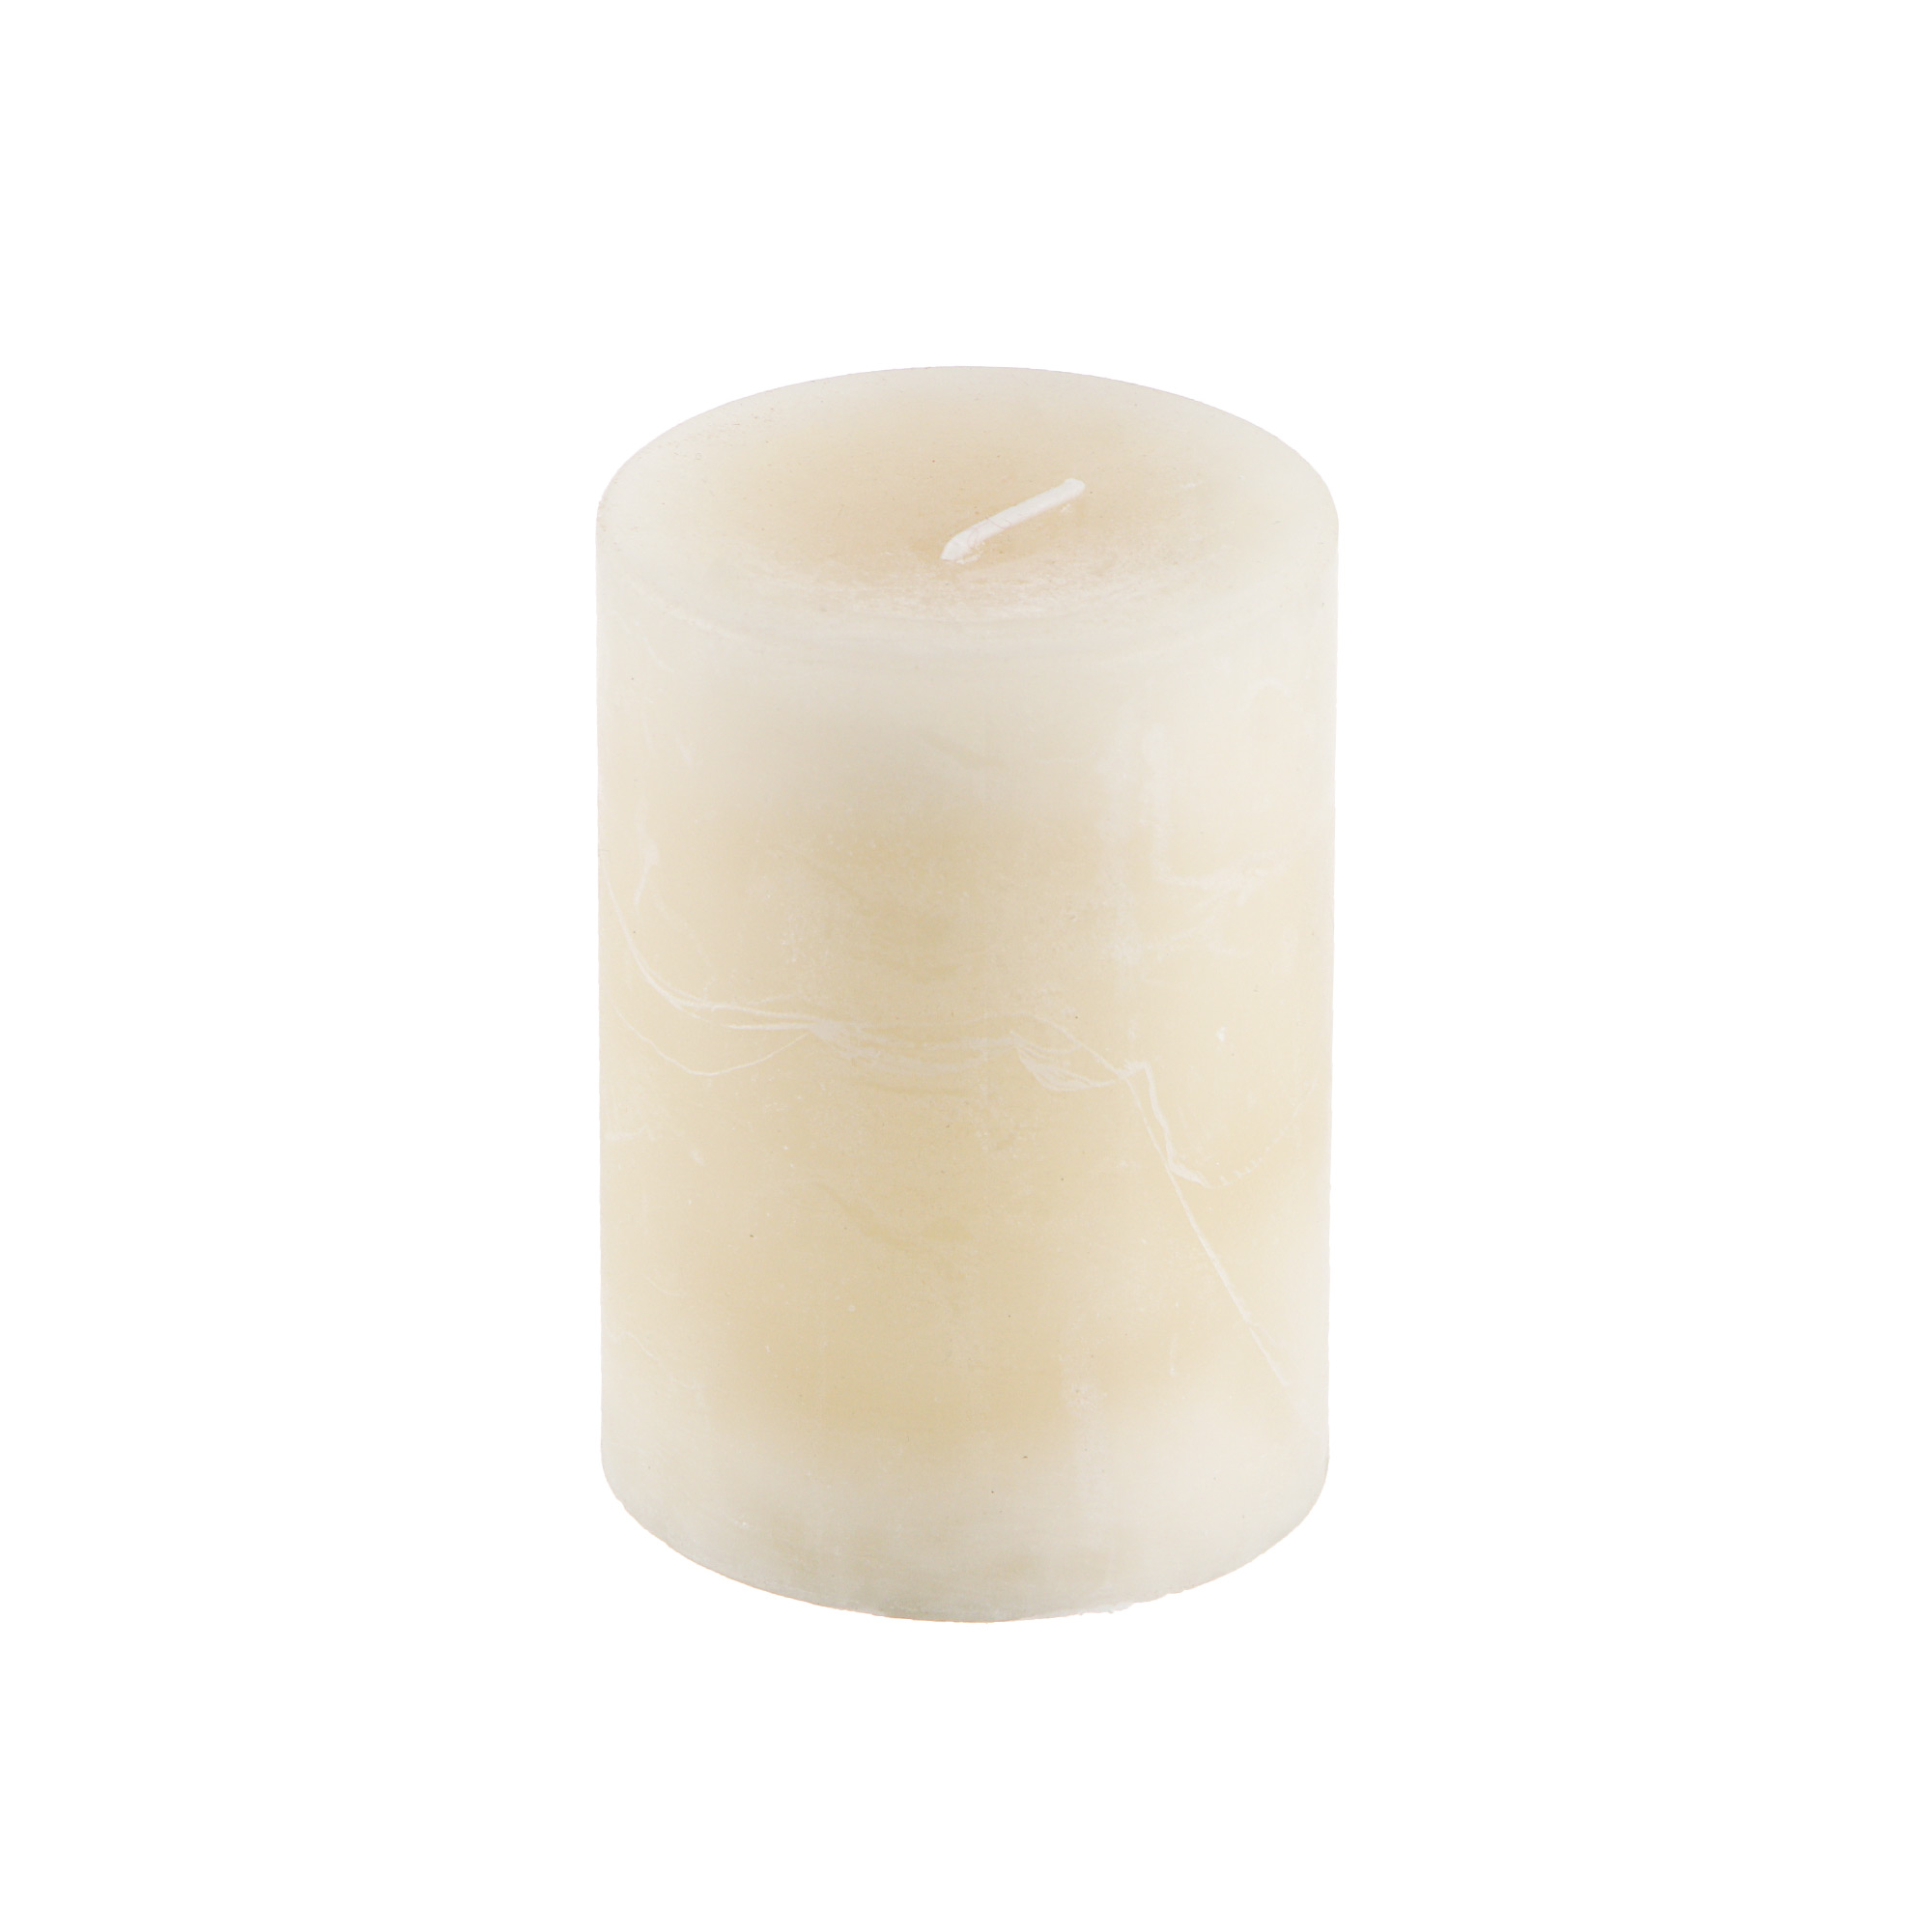 Свеча Sunford ароматическая ваниль 6.8х9.5 см свеча ароматическая sunford океан 6 8х9 5см